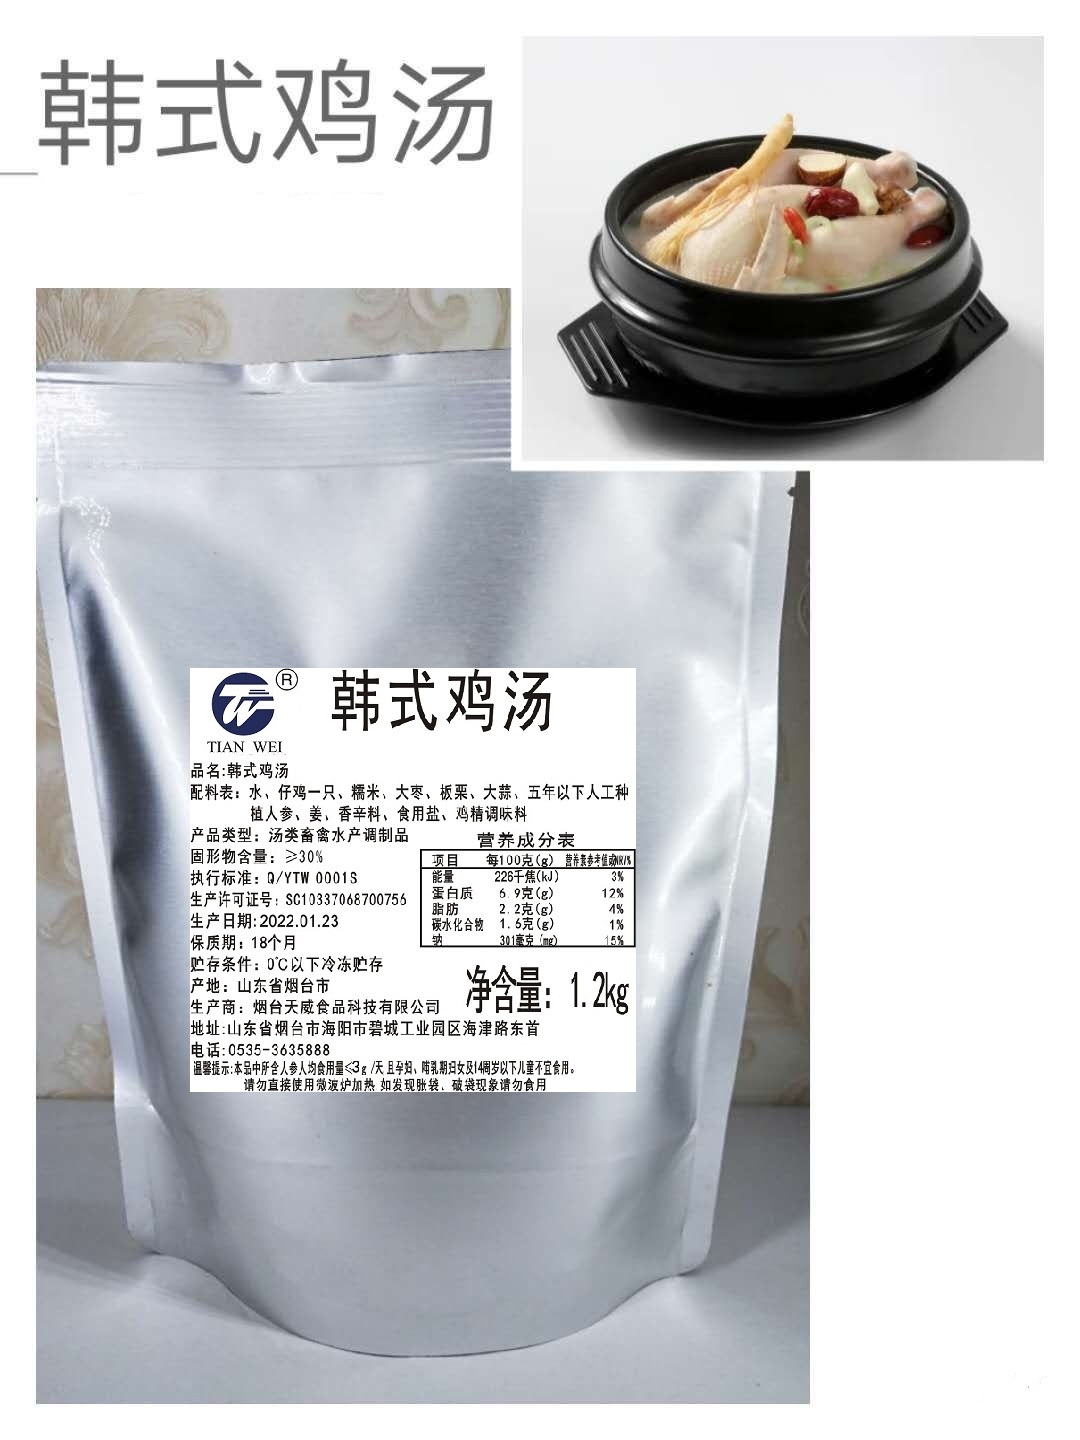 厂家直销韩式鸡汤拉面米线火锅专用汤底骨汤调味料速食浓缩汤浇头